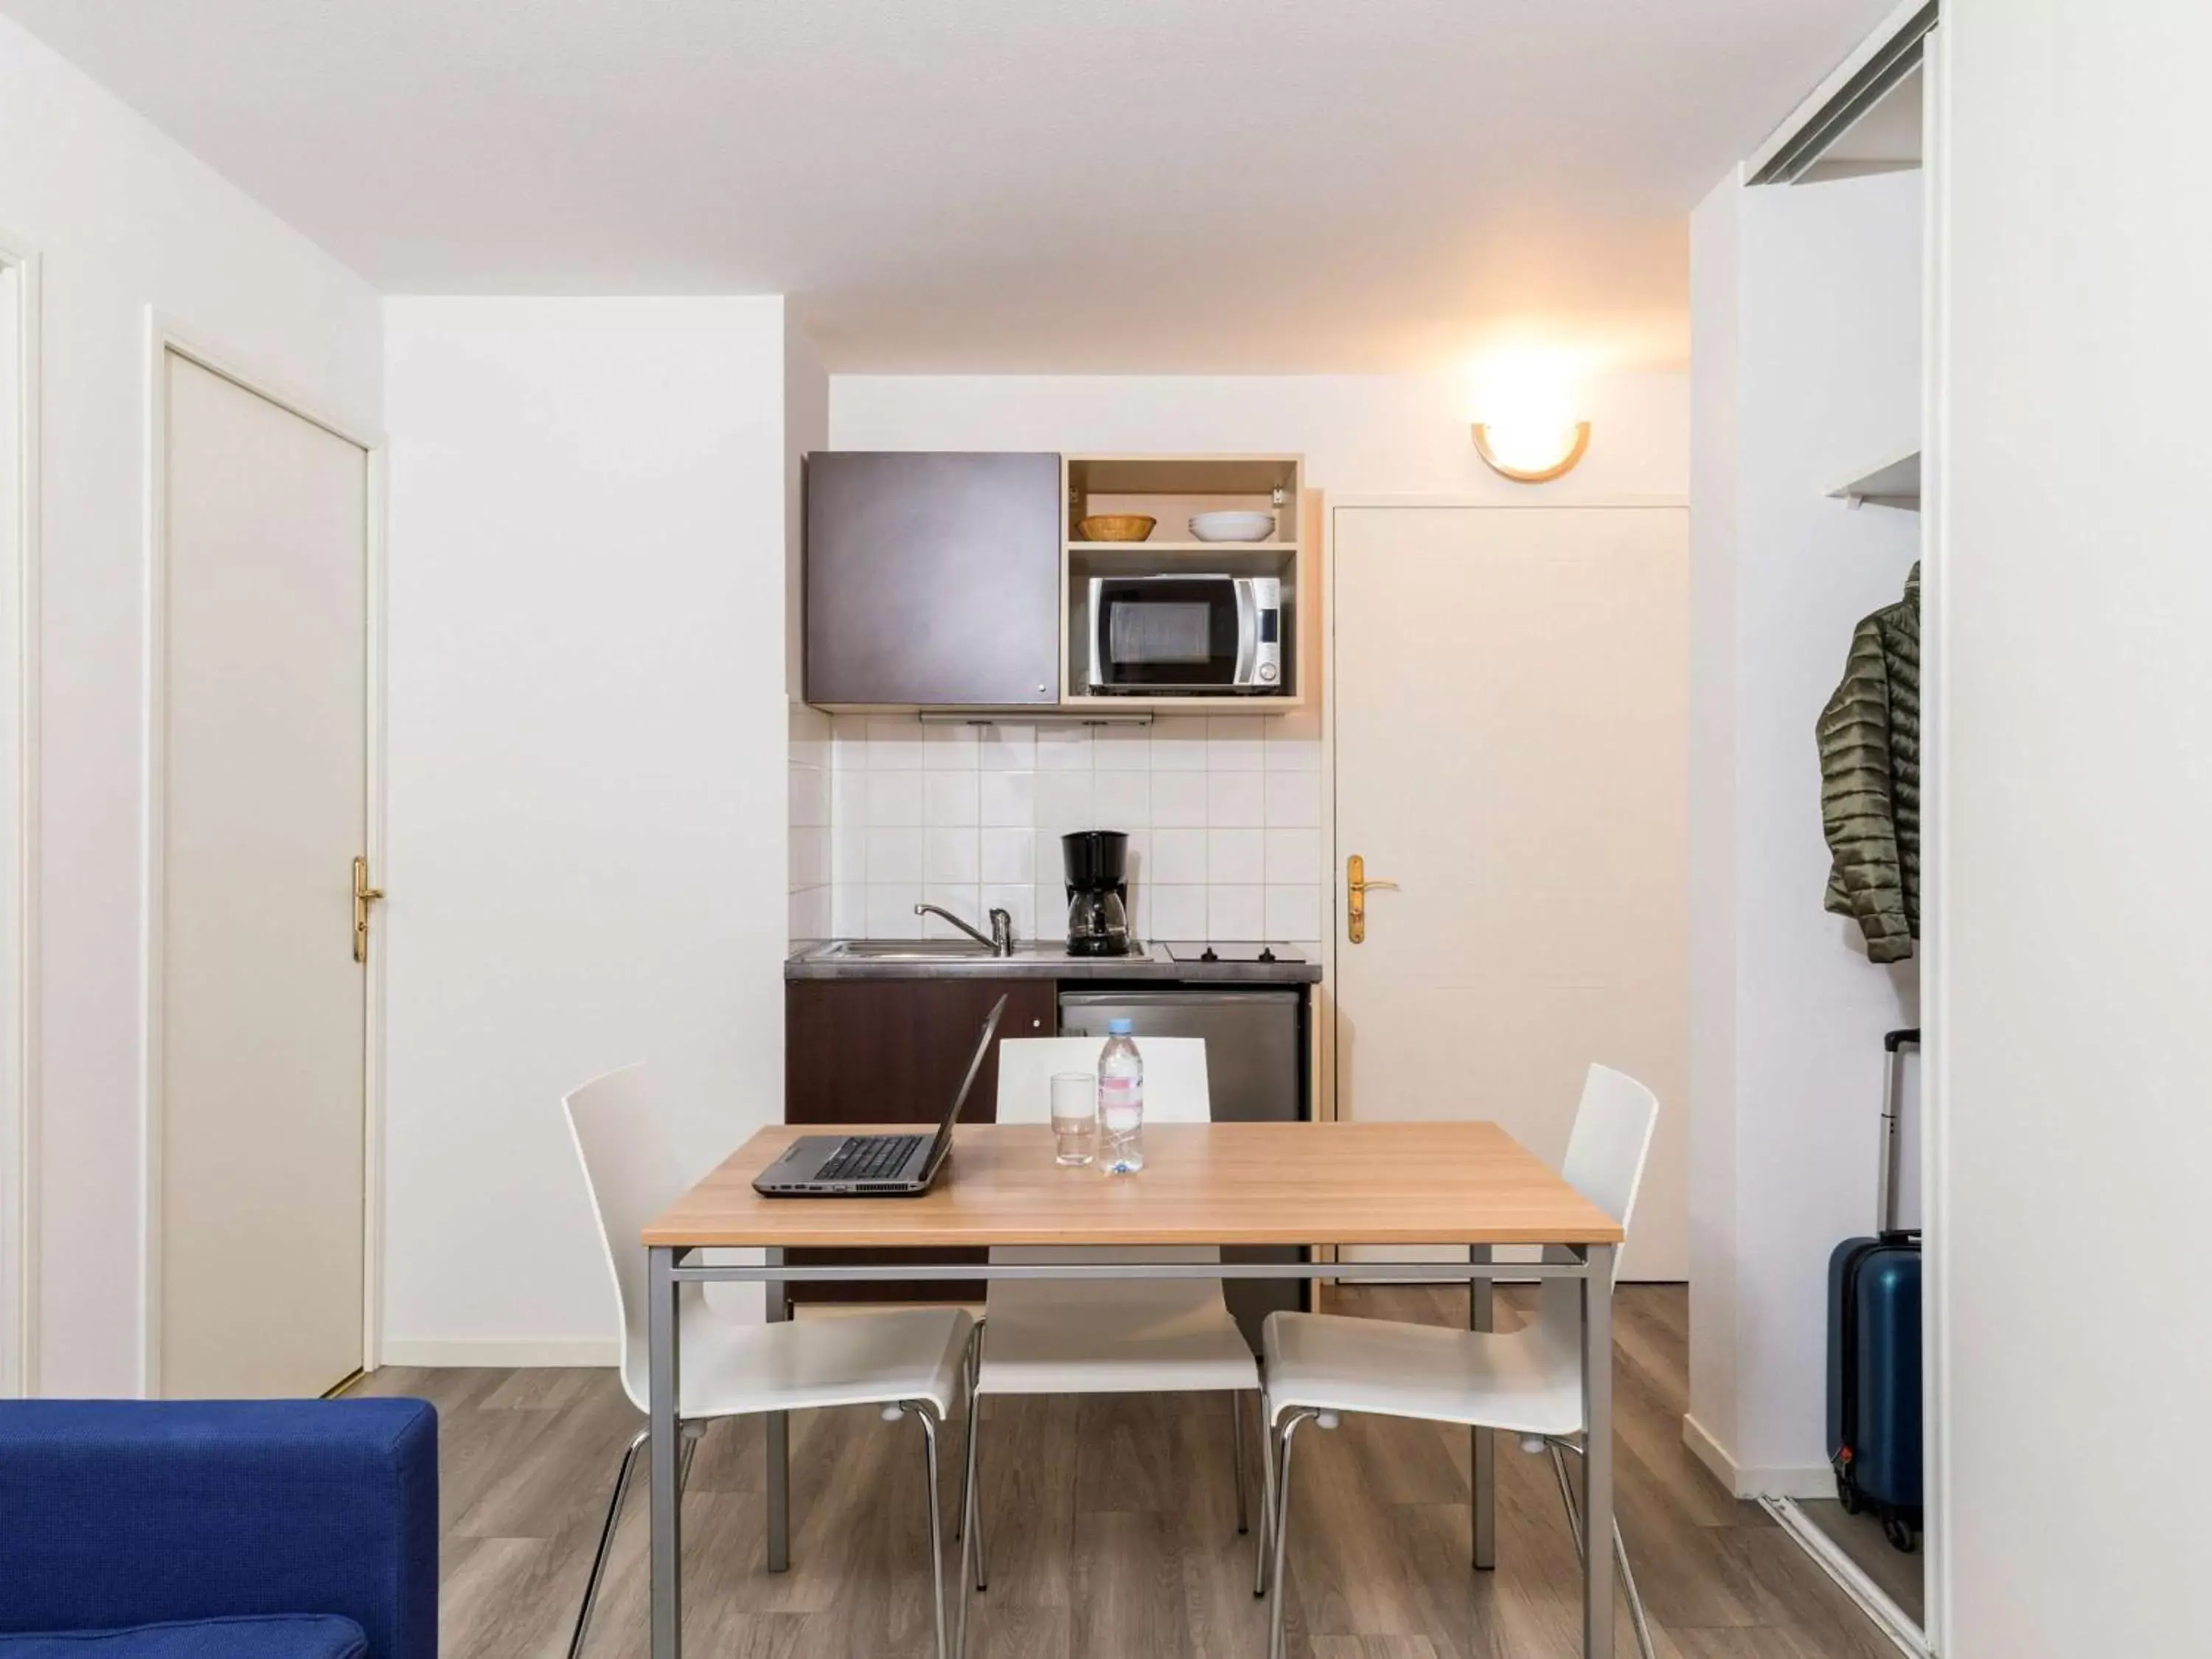 Photo of the whole room, Dining Area in Aparthotel Adagio Access Paris Clamart